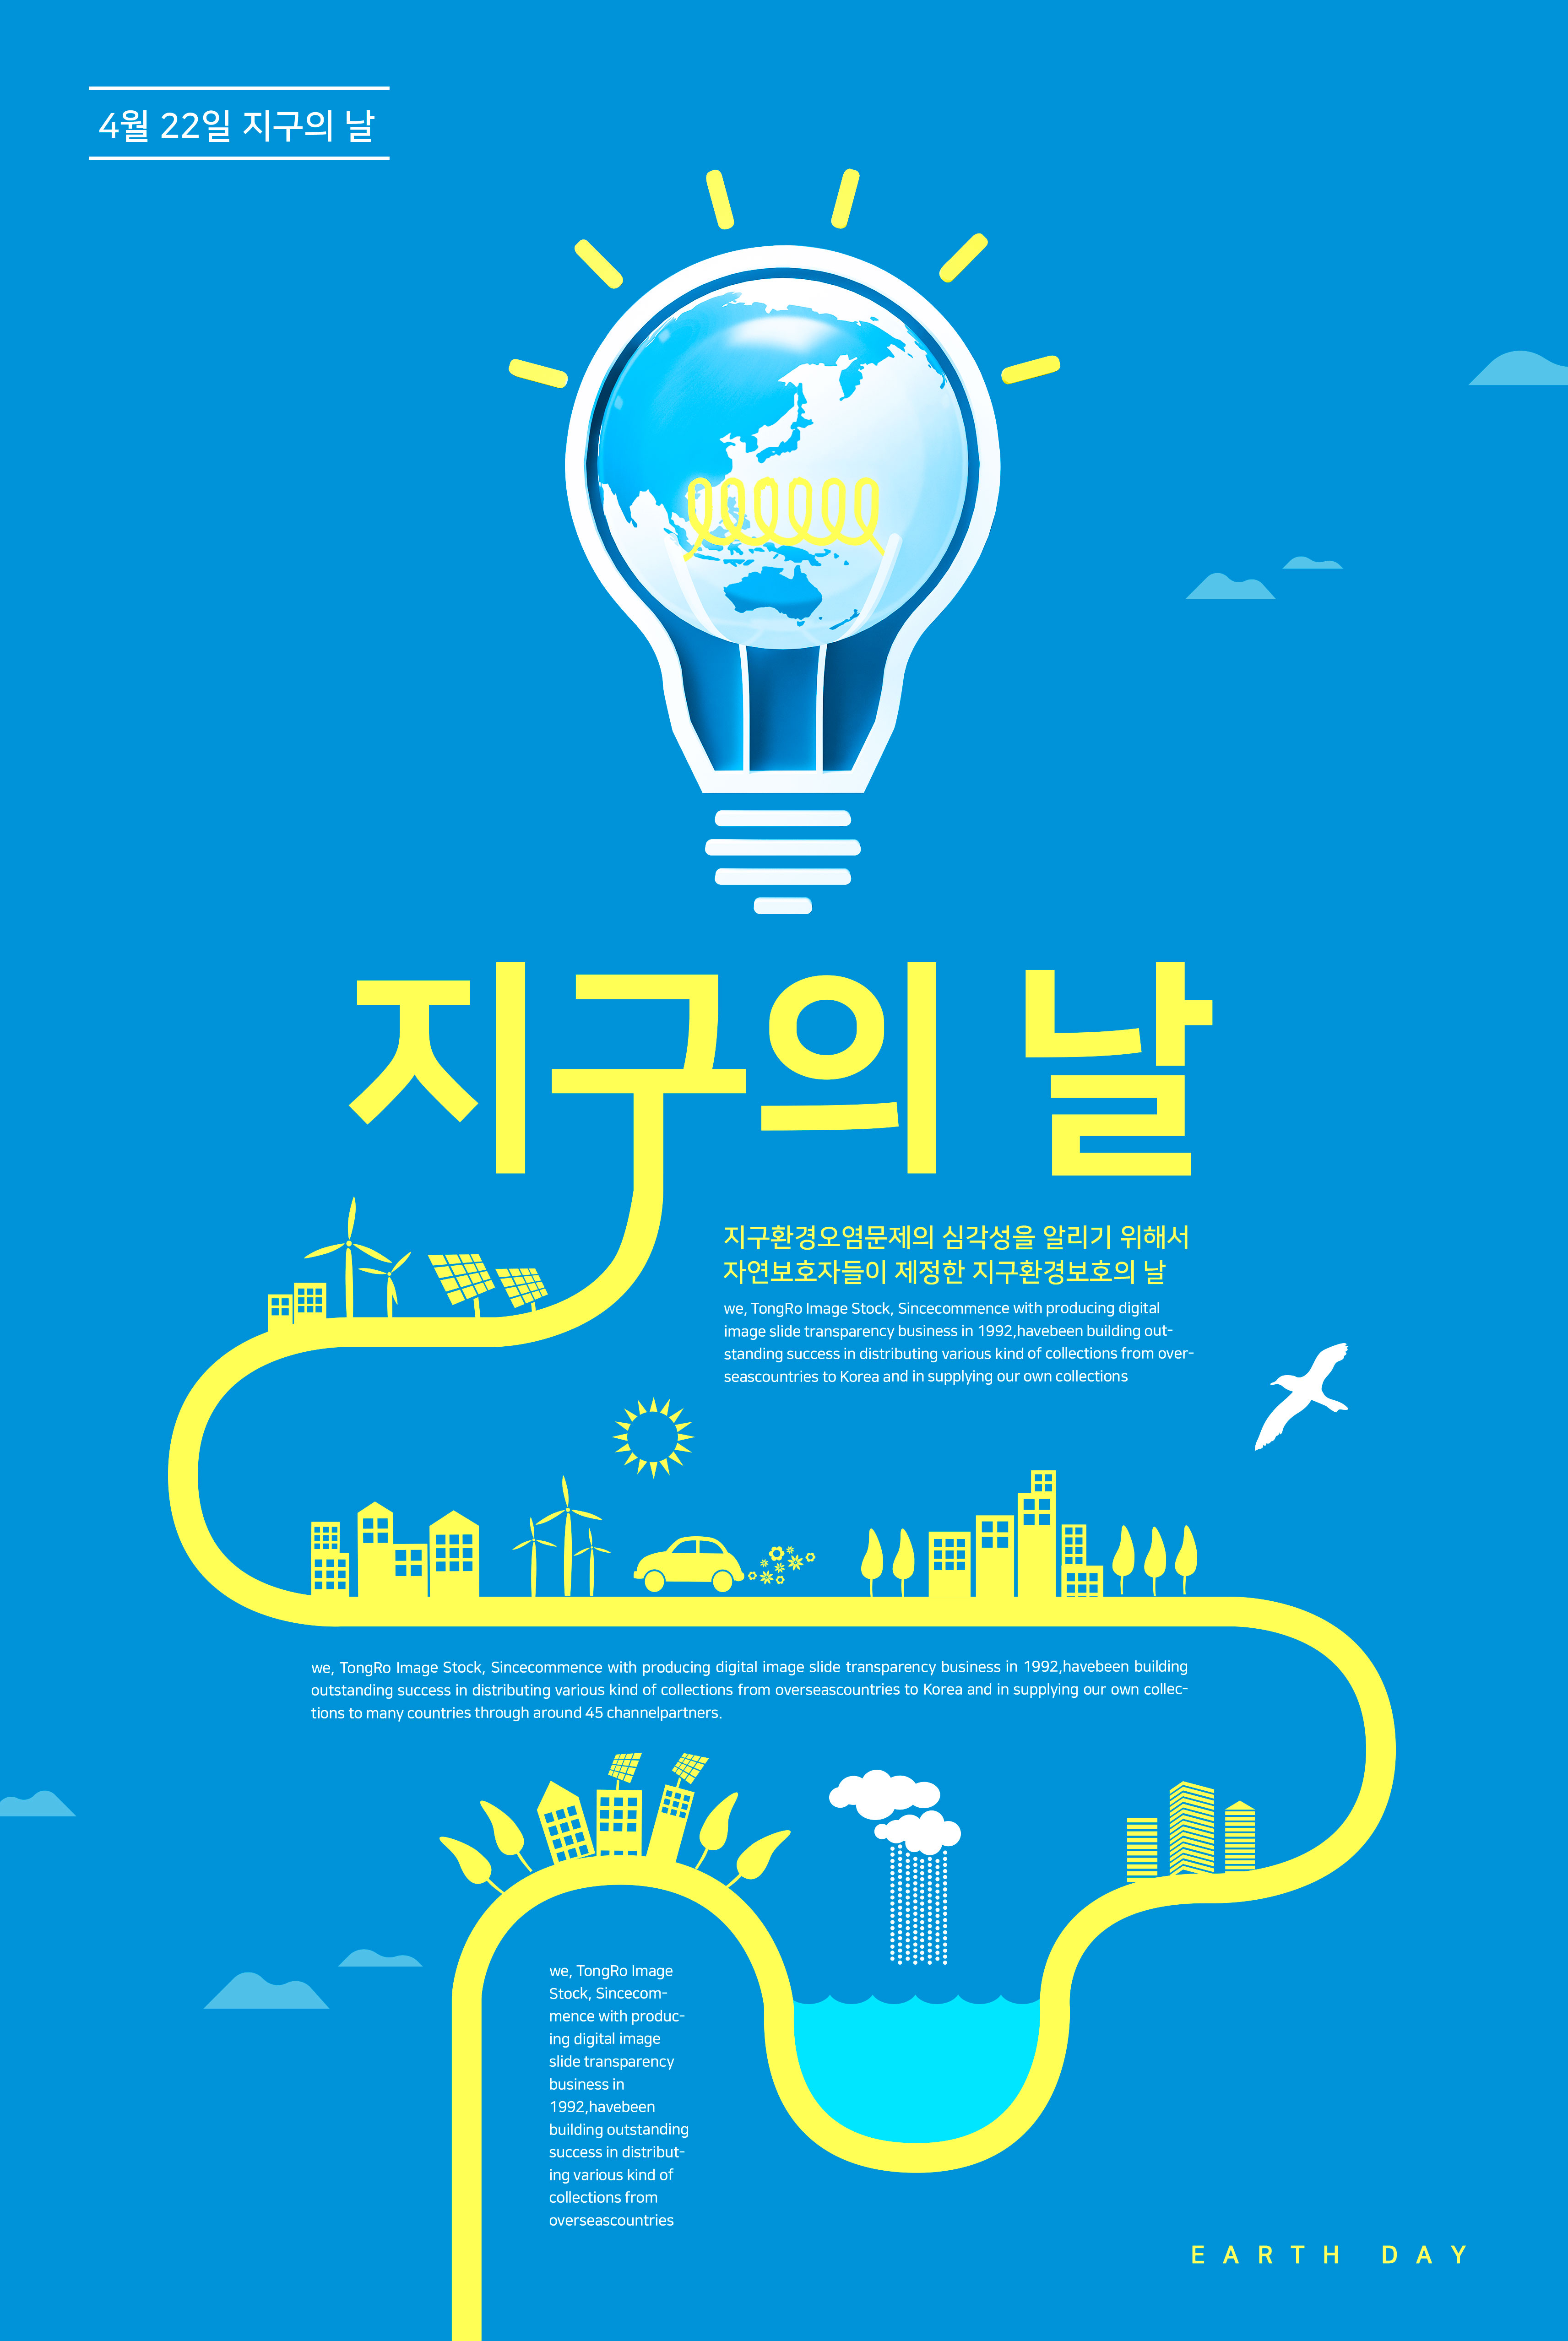 二次能源电能主题世界地球日宣传海报PSD素材第一素材精选psd素材插图